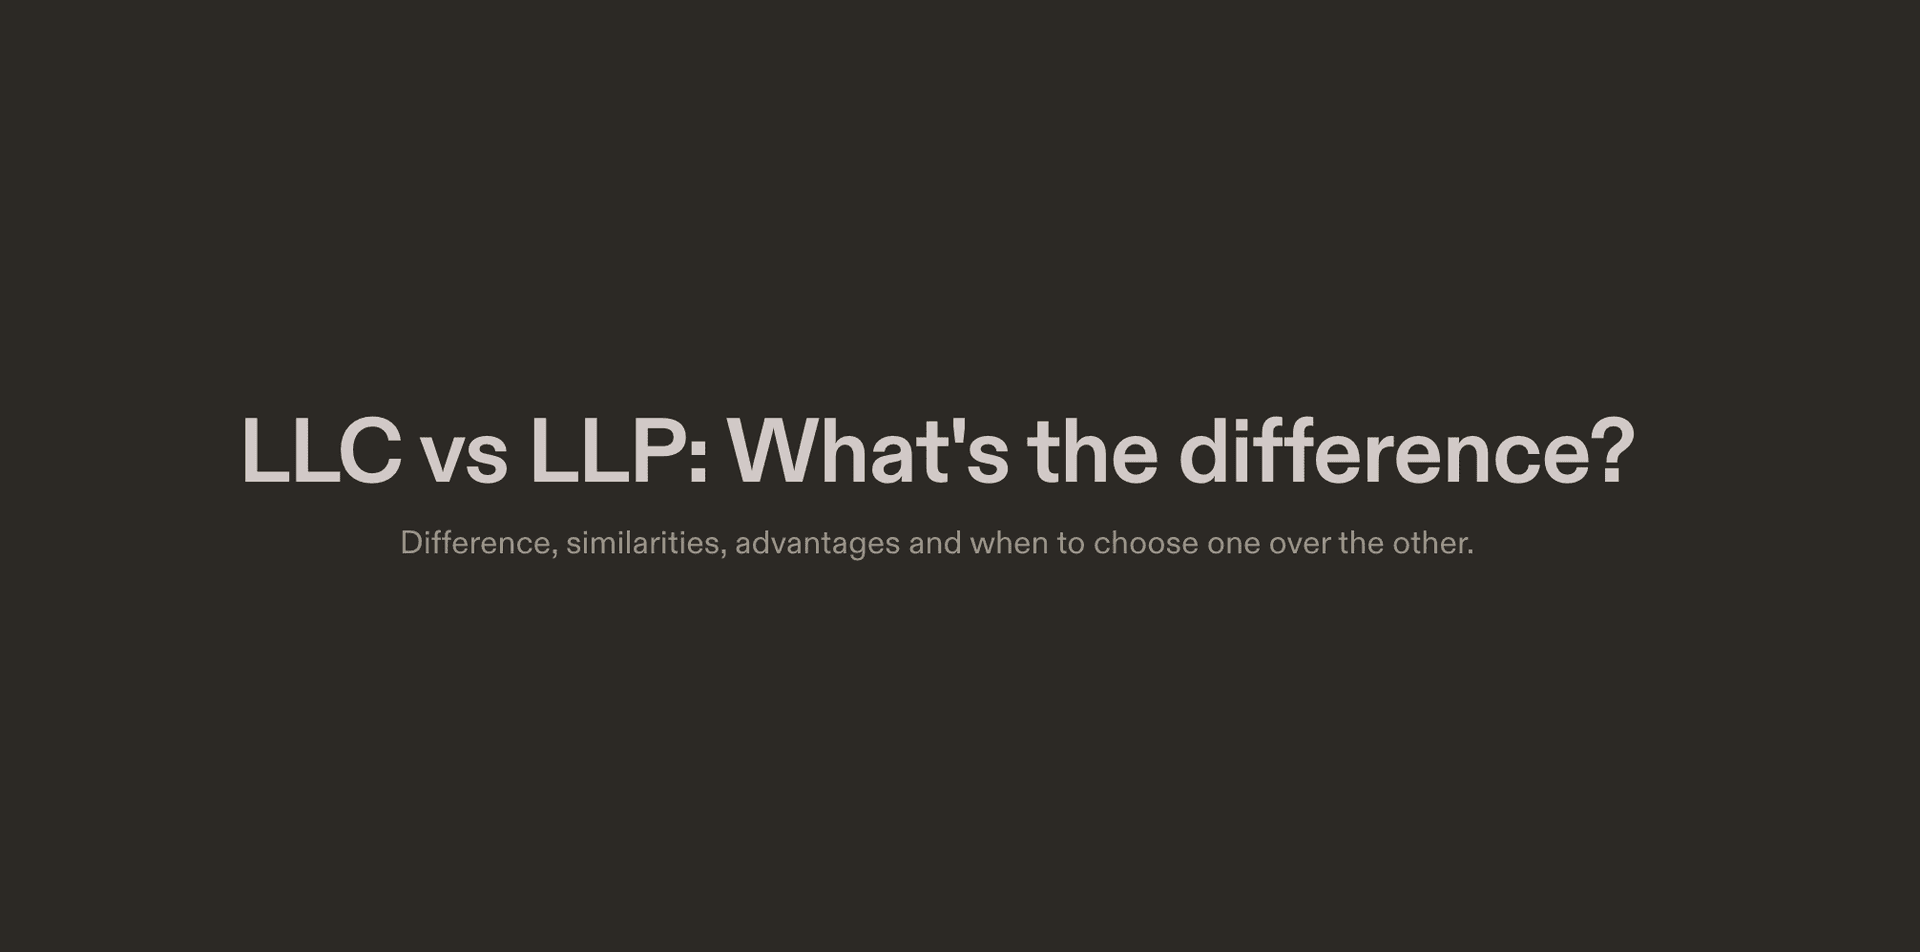 LLC vs LLP